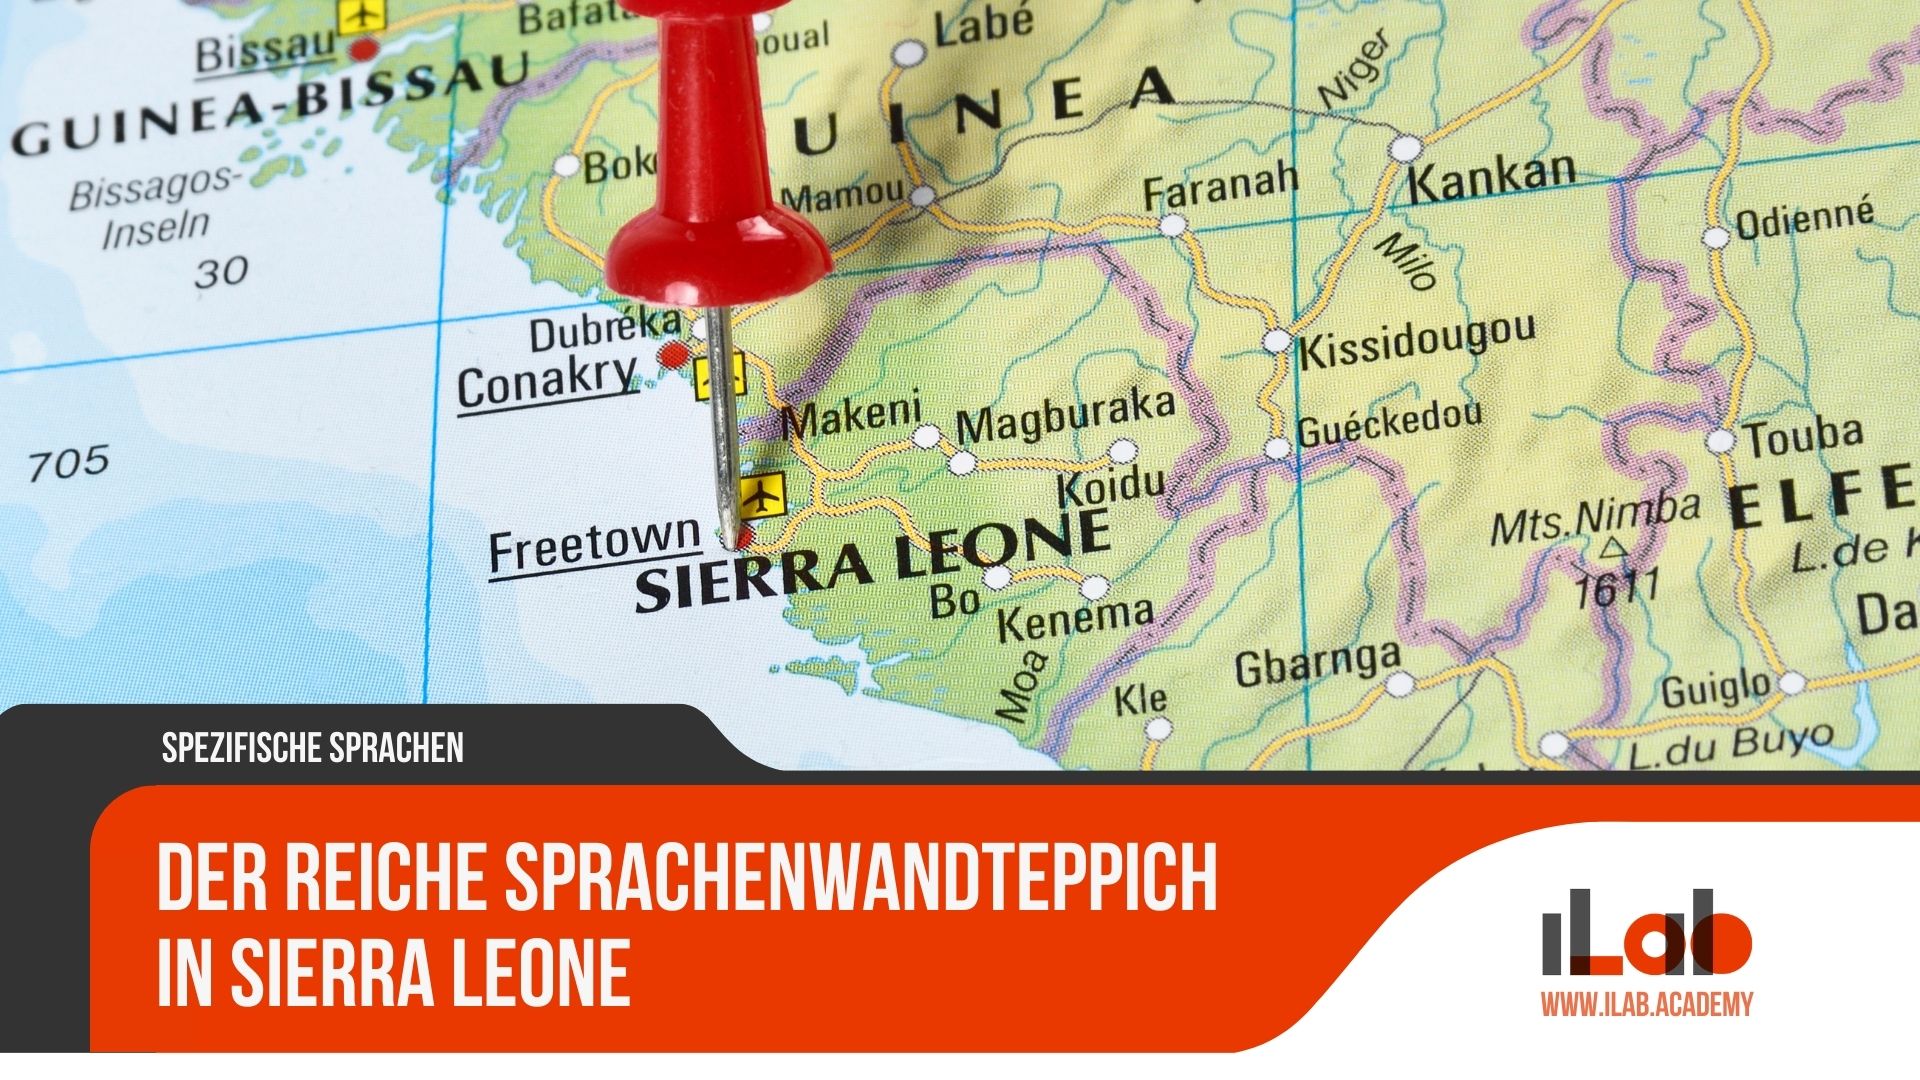 Der reiche Sprachenwandteppich in Sierra Leone